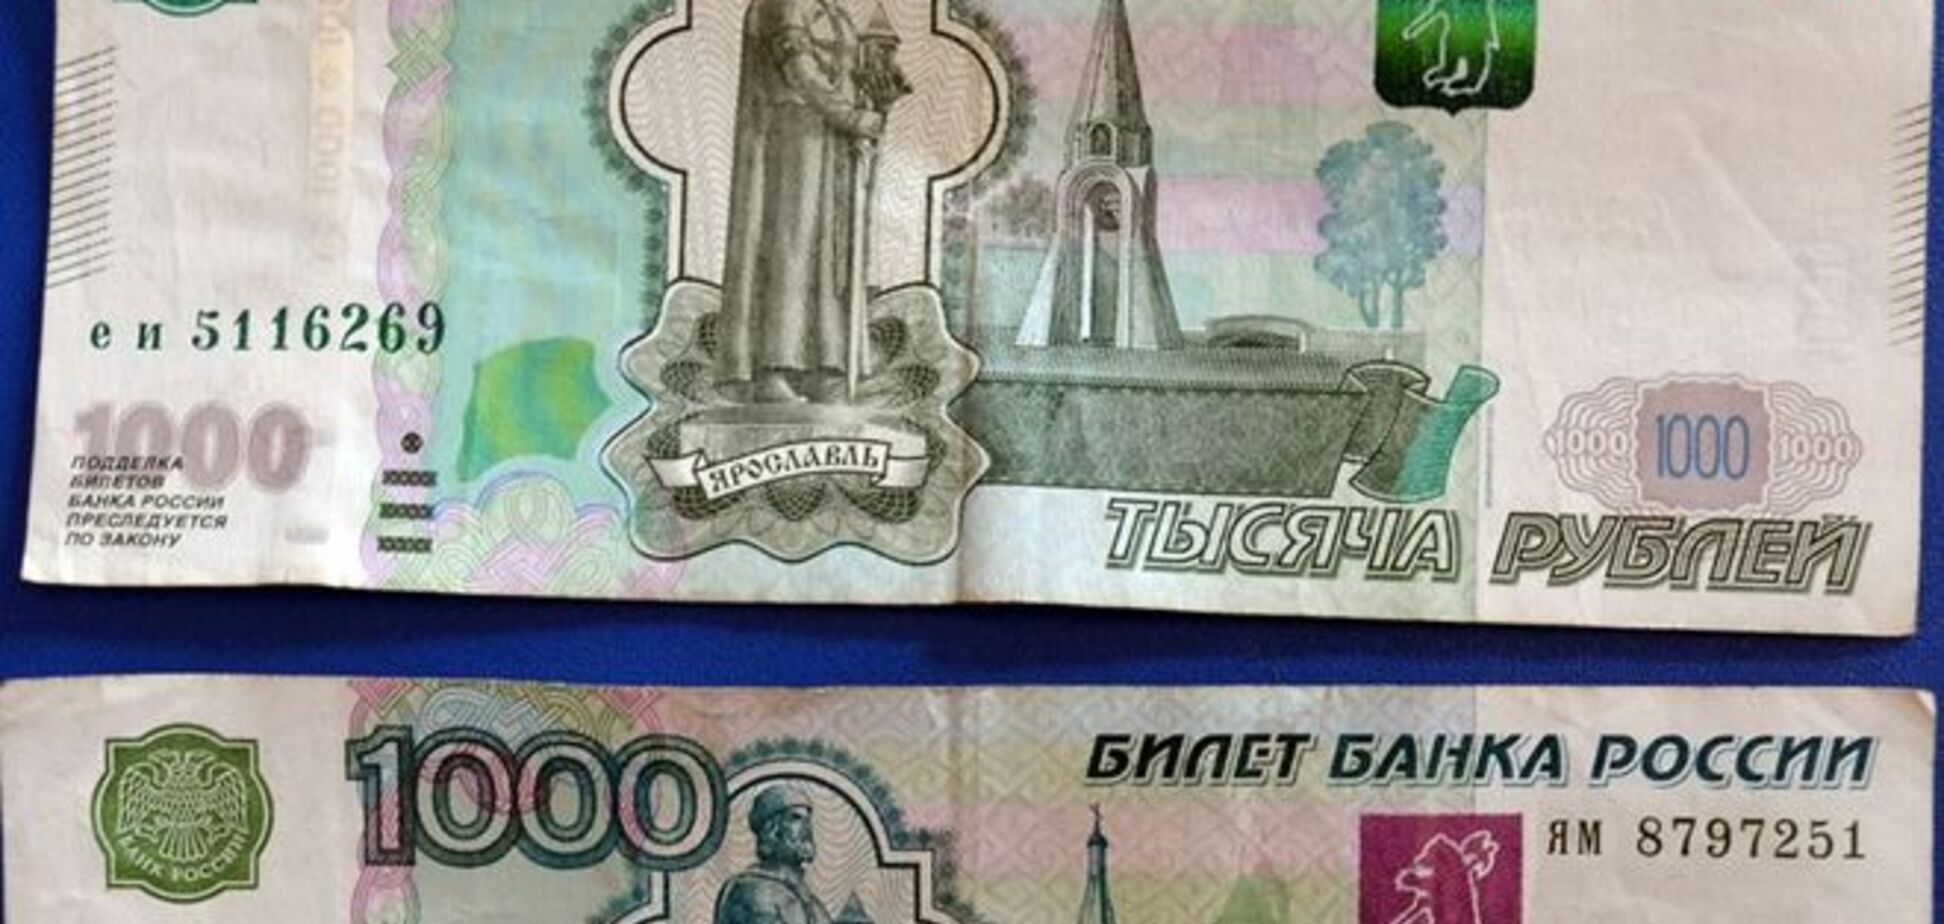 Мечта нумизмата: в Луганске пенсии выдают редкими и ценными рублями - фотофакт